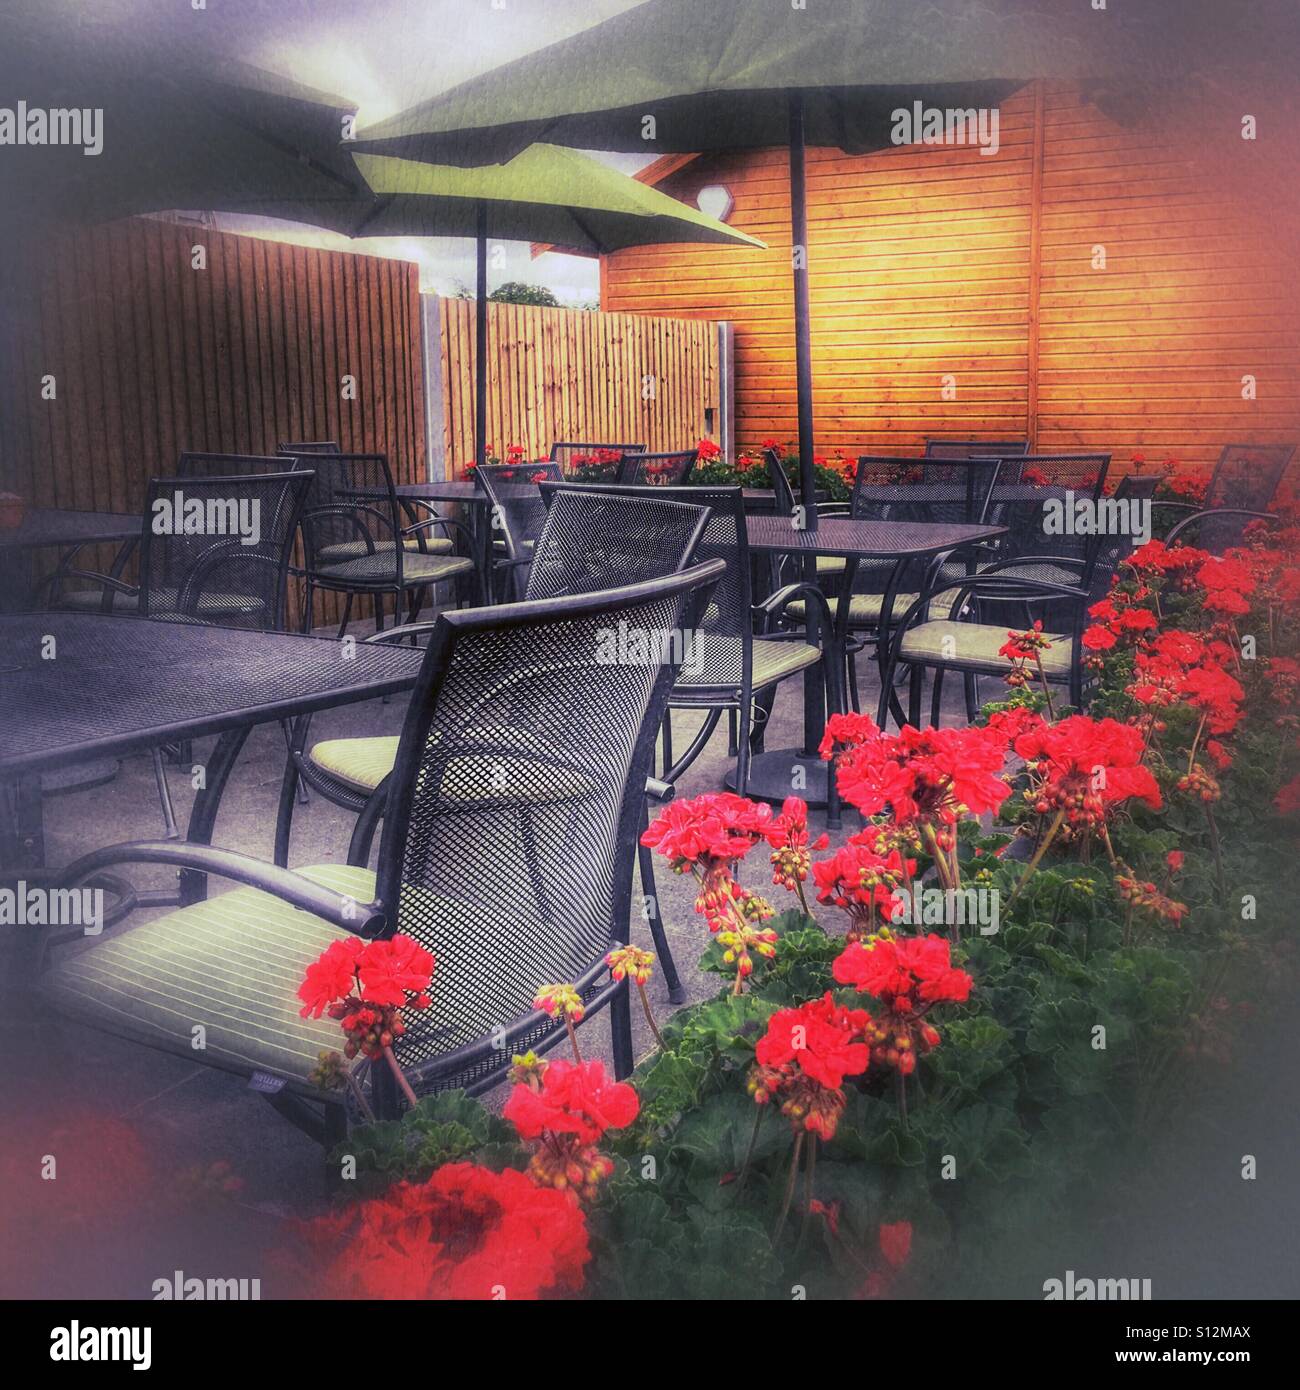 Plus de parapluies patio extérieur coin repas d'un centre de jardin café / restaurant, entouré de géraniums rouges. Stratford-upon-Avon, Warwickshire, Angleterre, Royaume-Uni. Banque D'Images